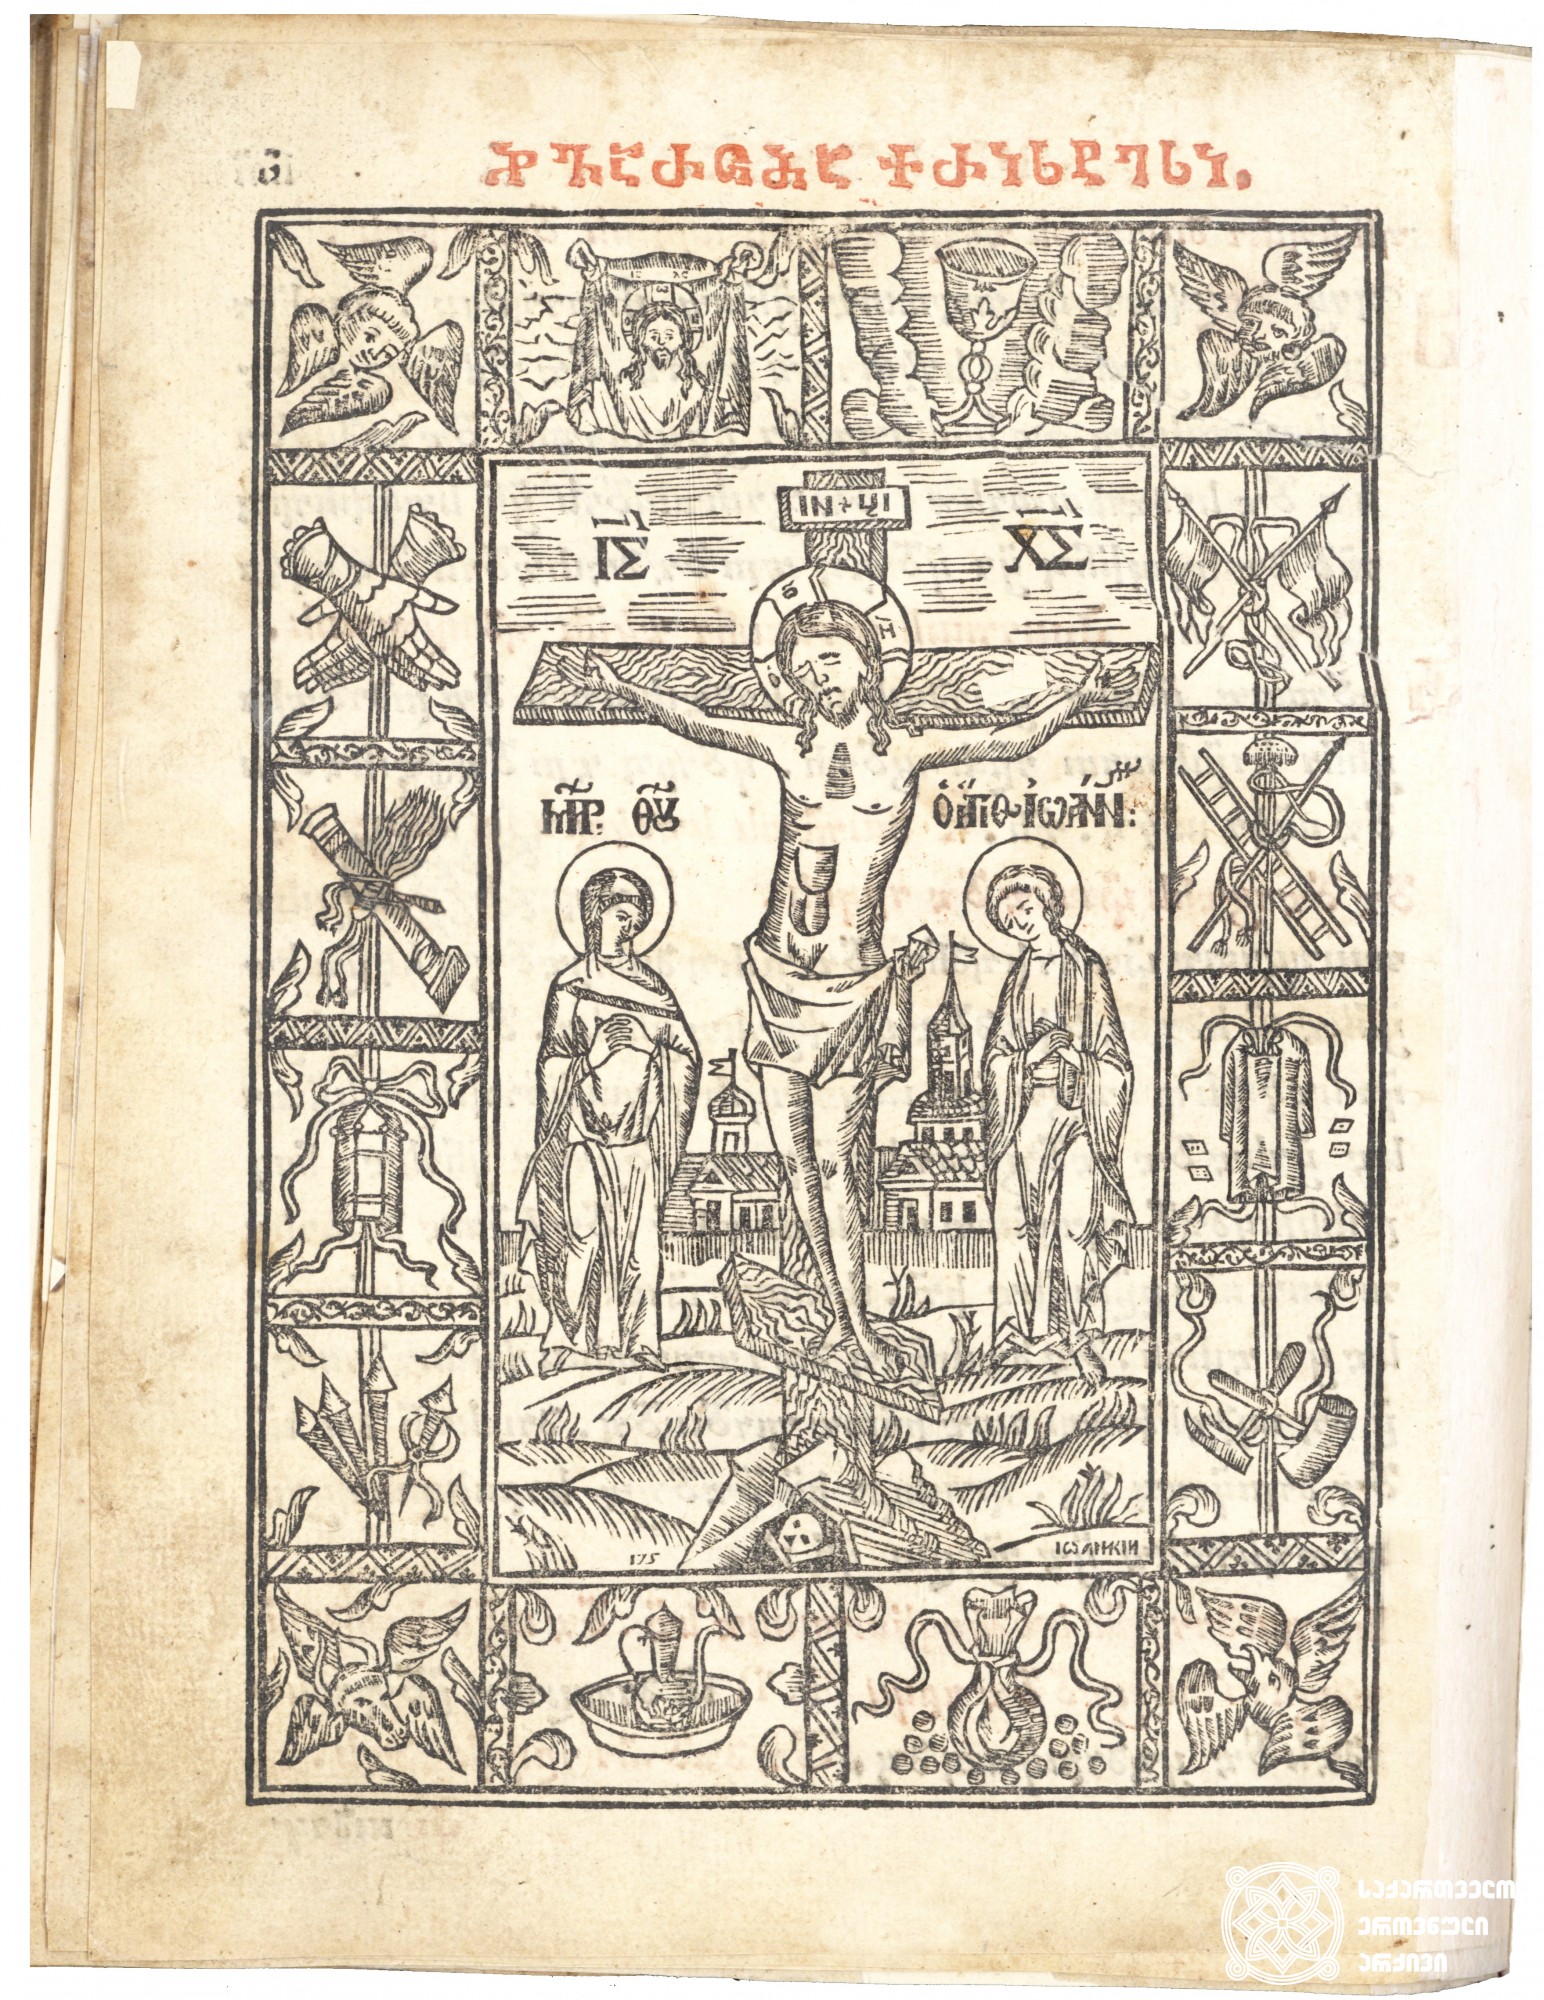 ჯვარცმა <br>
ტფილისი, 1710 <br>
ვახტანგ VI-ის სტამბა <br>
ტექსტის გამმართველი: გერმანე მღვდელმონაზონი <br>
მესტამბე: მიხაილ სტეფანეს ძე უნგროვლახელი <br>
Crucifixion  <br>
Tfilisi, 1710 <br>
Printing house of Vakhtang VI <br>
Editor: Germane Hieromonk <br>
Printer: Mihai Ungrovlakheli <br>